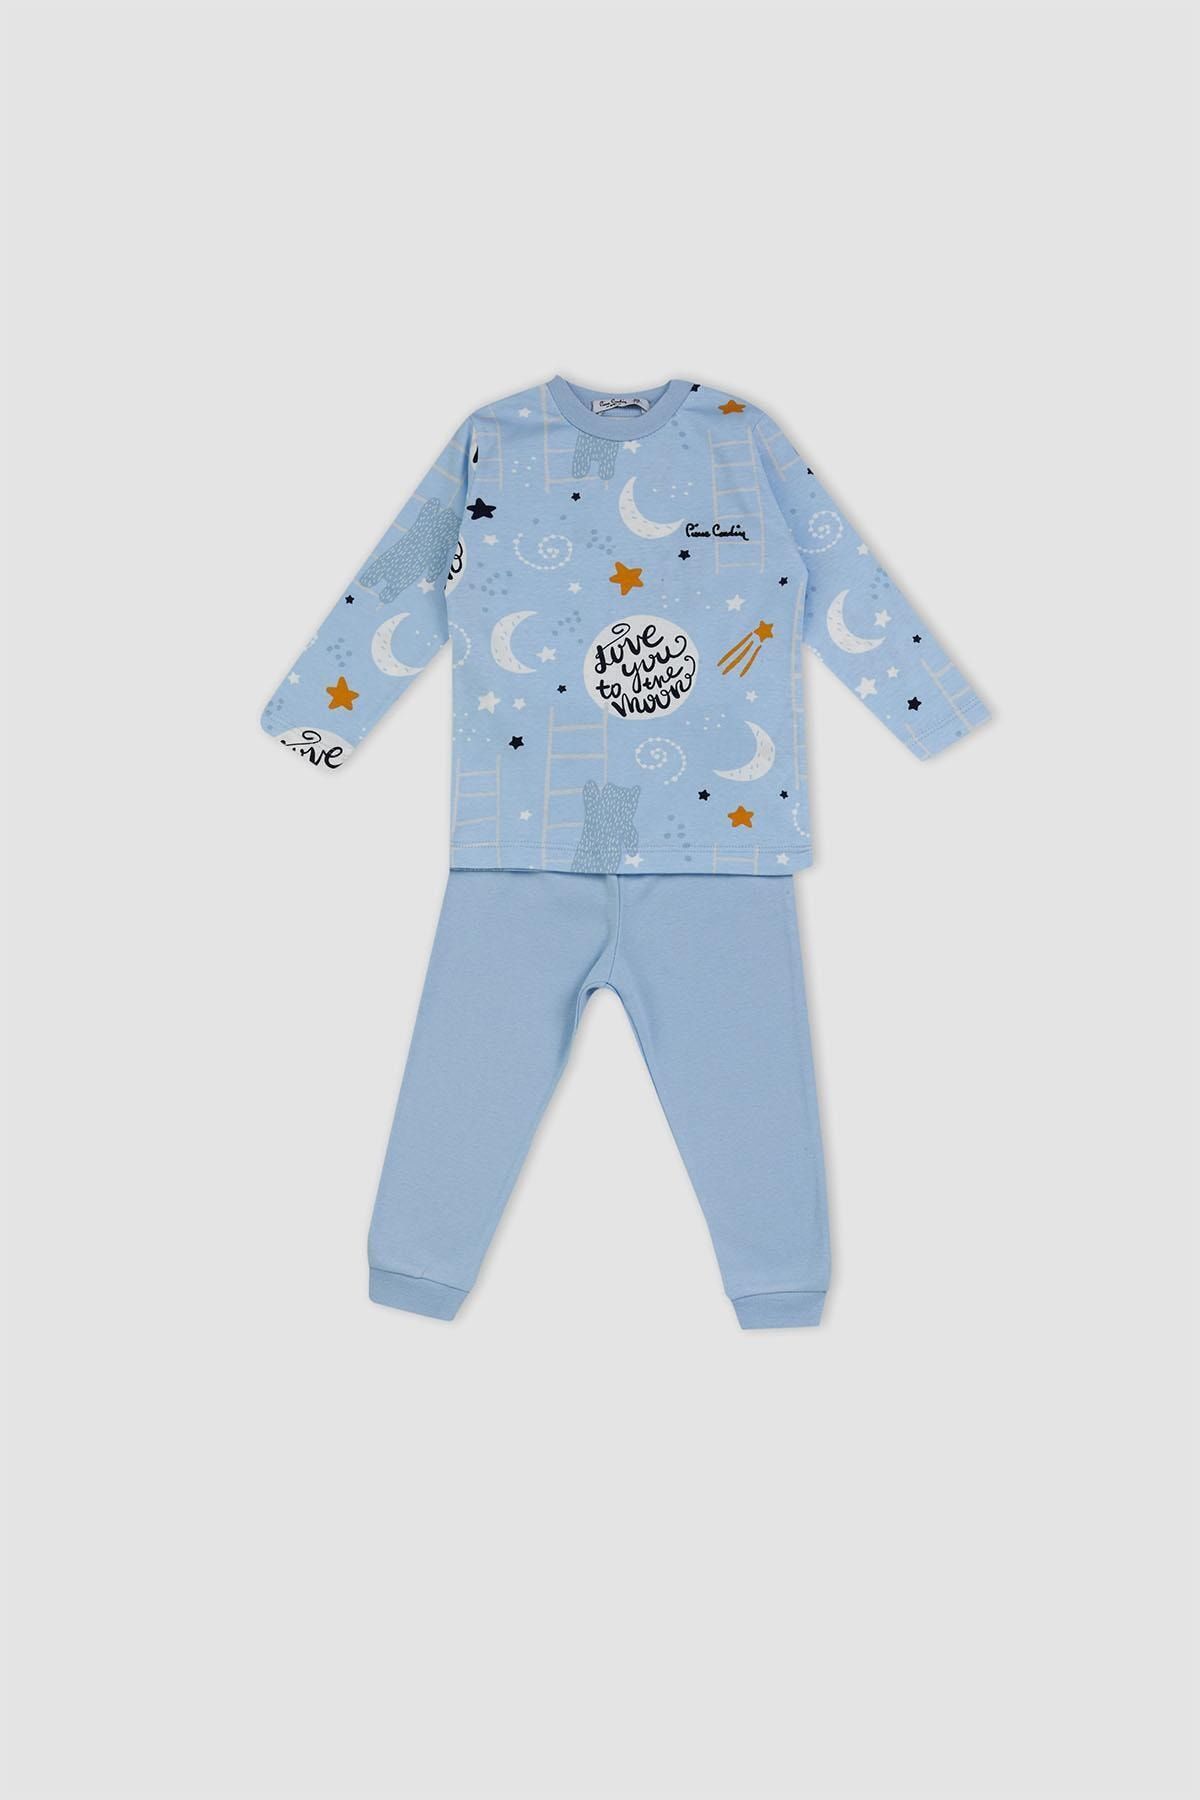 Pierre Cardin Çocuk Pijama Takımı 302286